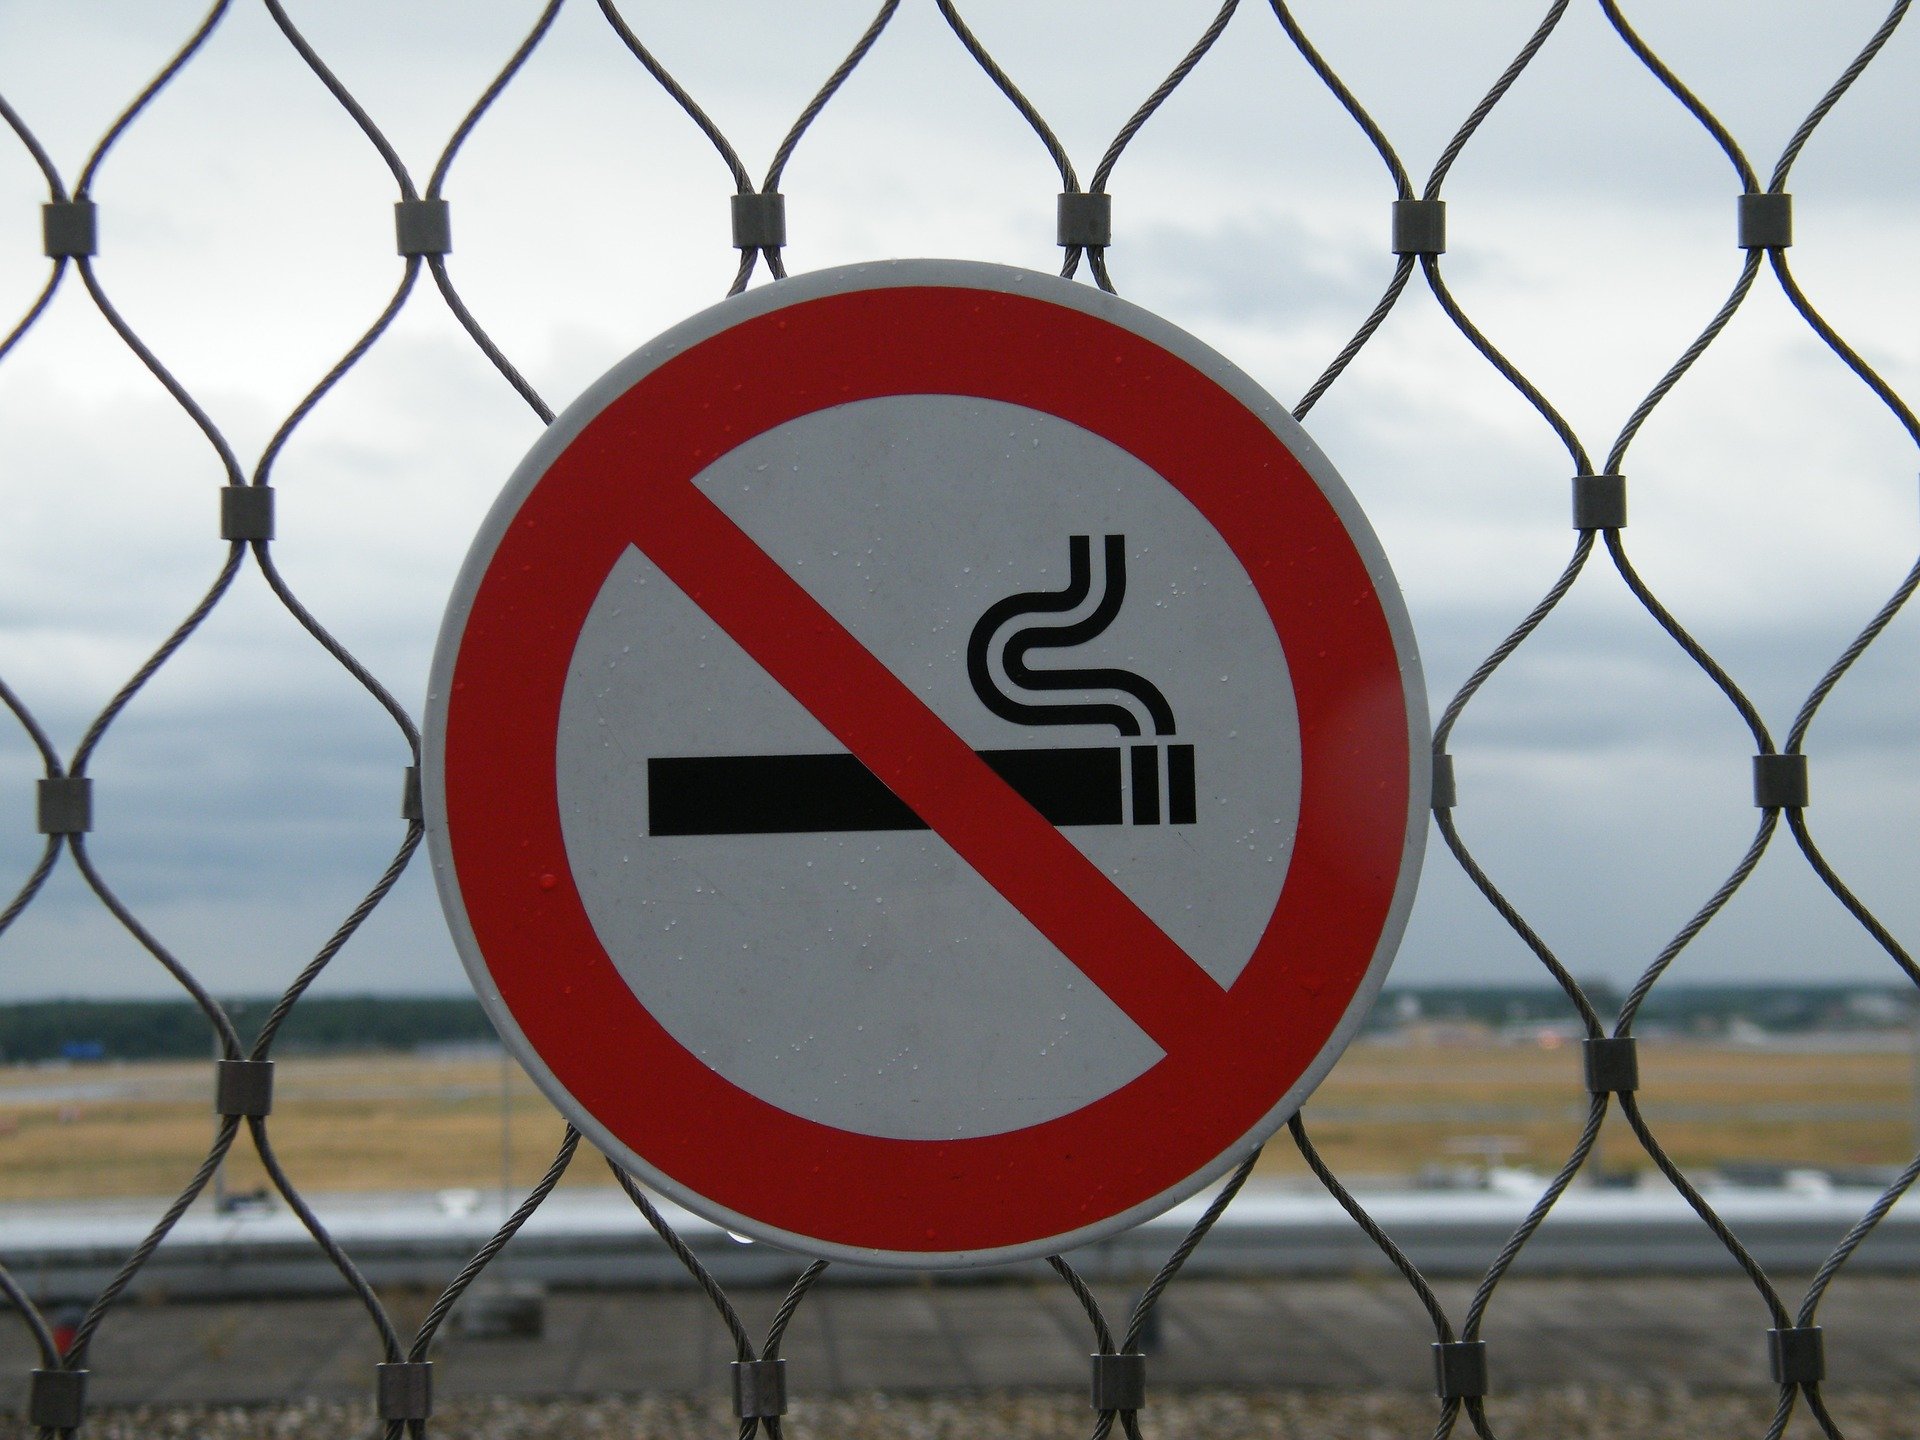 ограничения для курильщиков 2021 год